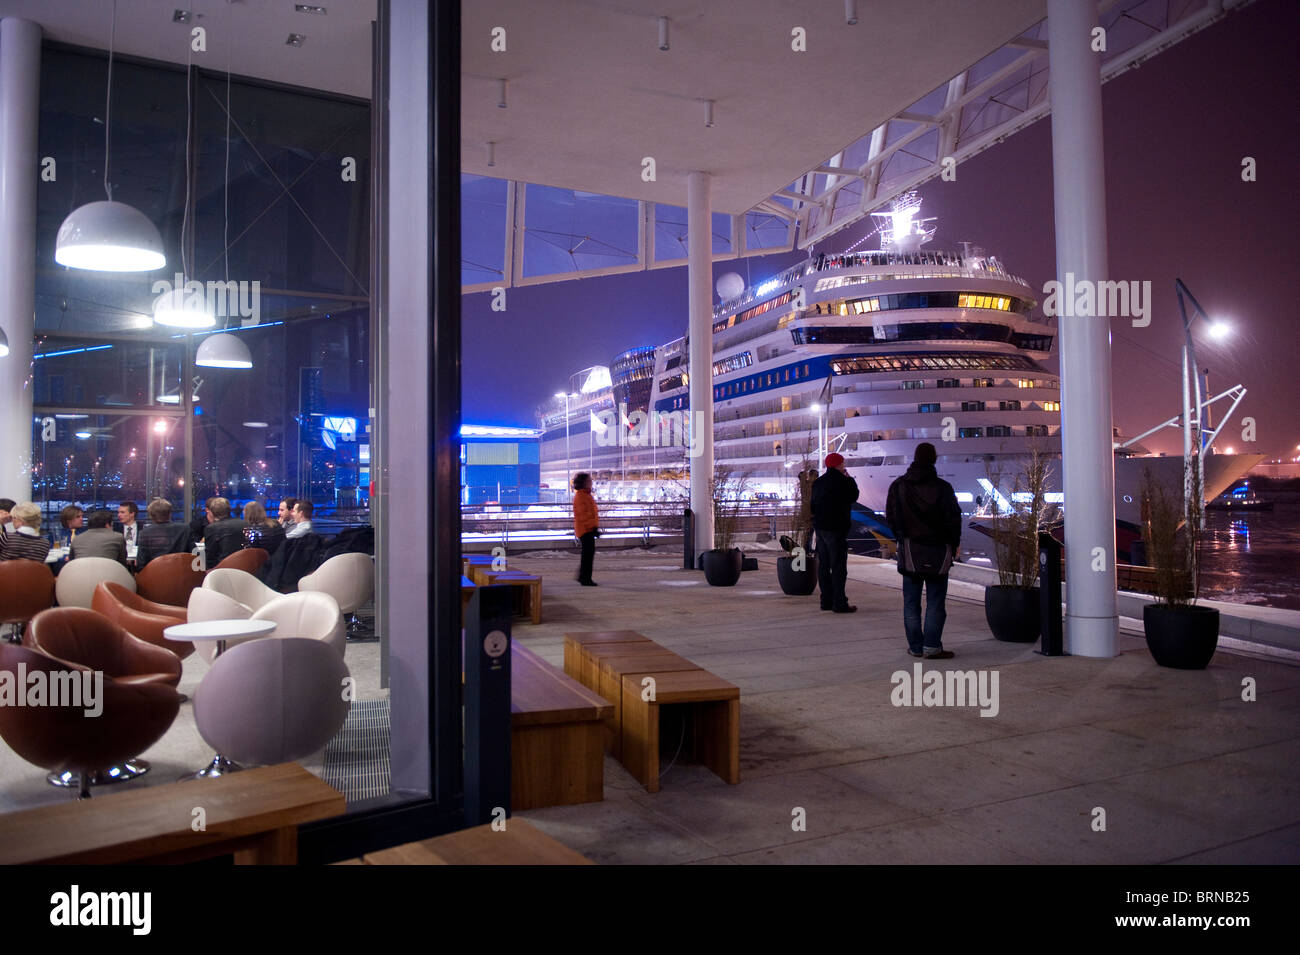 Europa Alemania Hamburgo, Hafencity Harbor City , nuevo , terminal de crucero con el buque de pasajeros Aida blu durante la noche Foto de stock